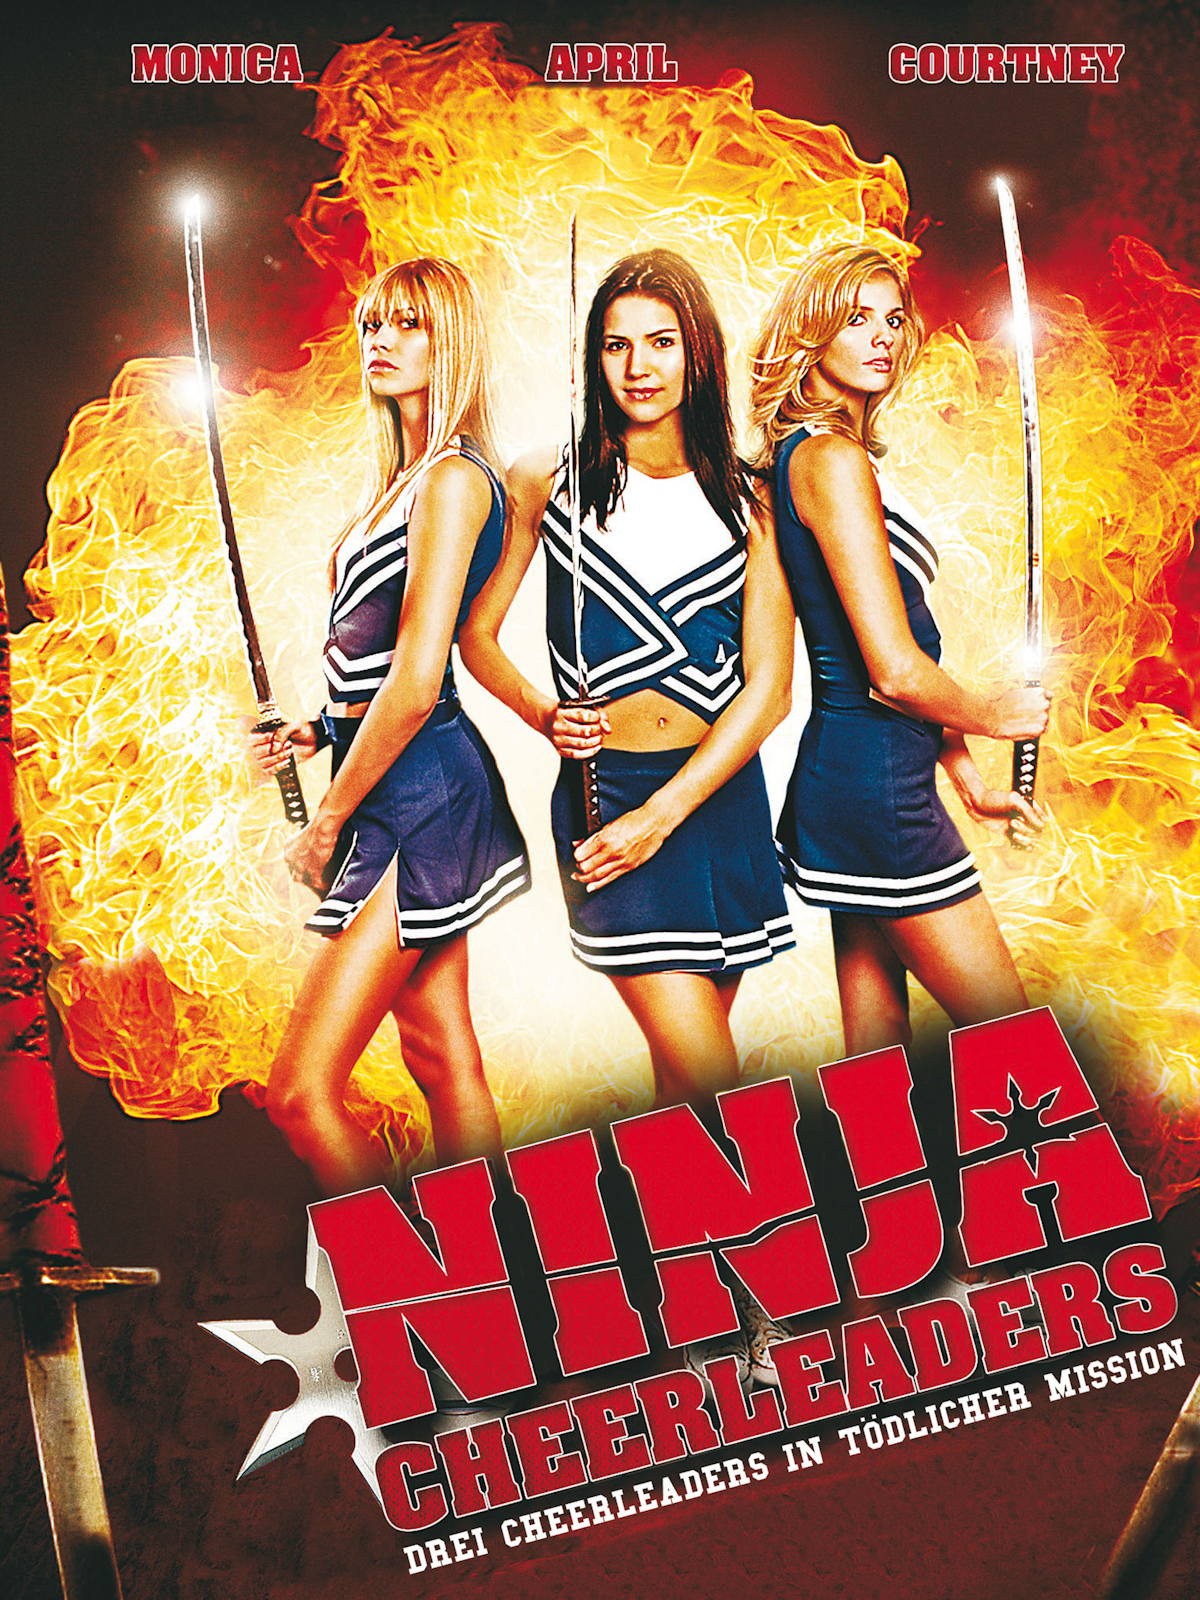 ดูหนังออนไลน์ฟรี Ninja Cheerleaders (2008) หนังเต็มเรื่อง หนังมาสเตอร์ ดูหนังHD ดูหนังออนไลน์ ดูหนังใหม่